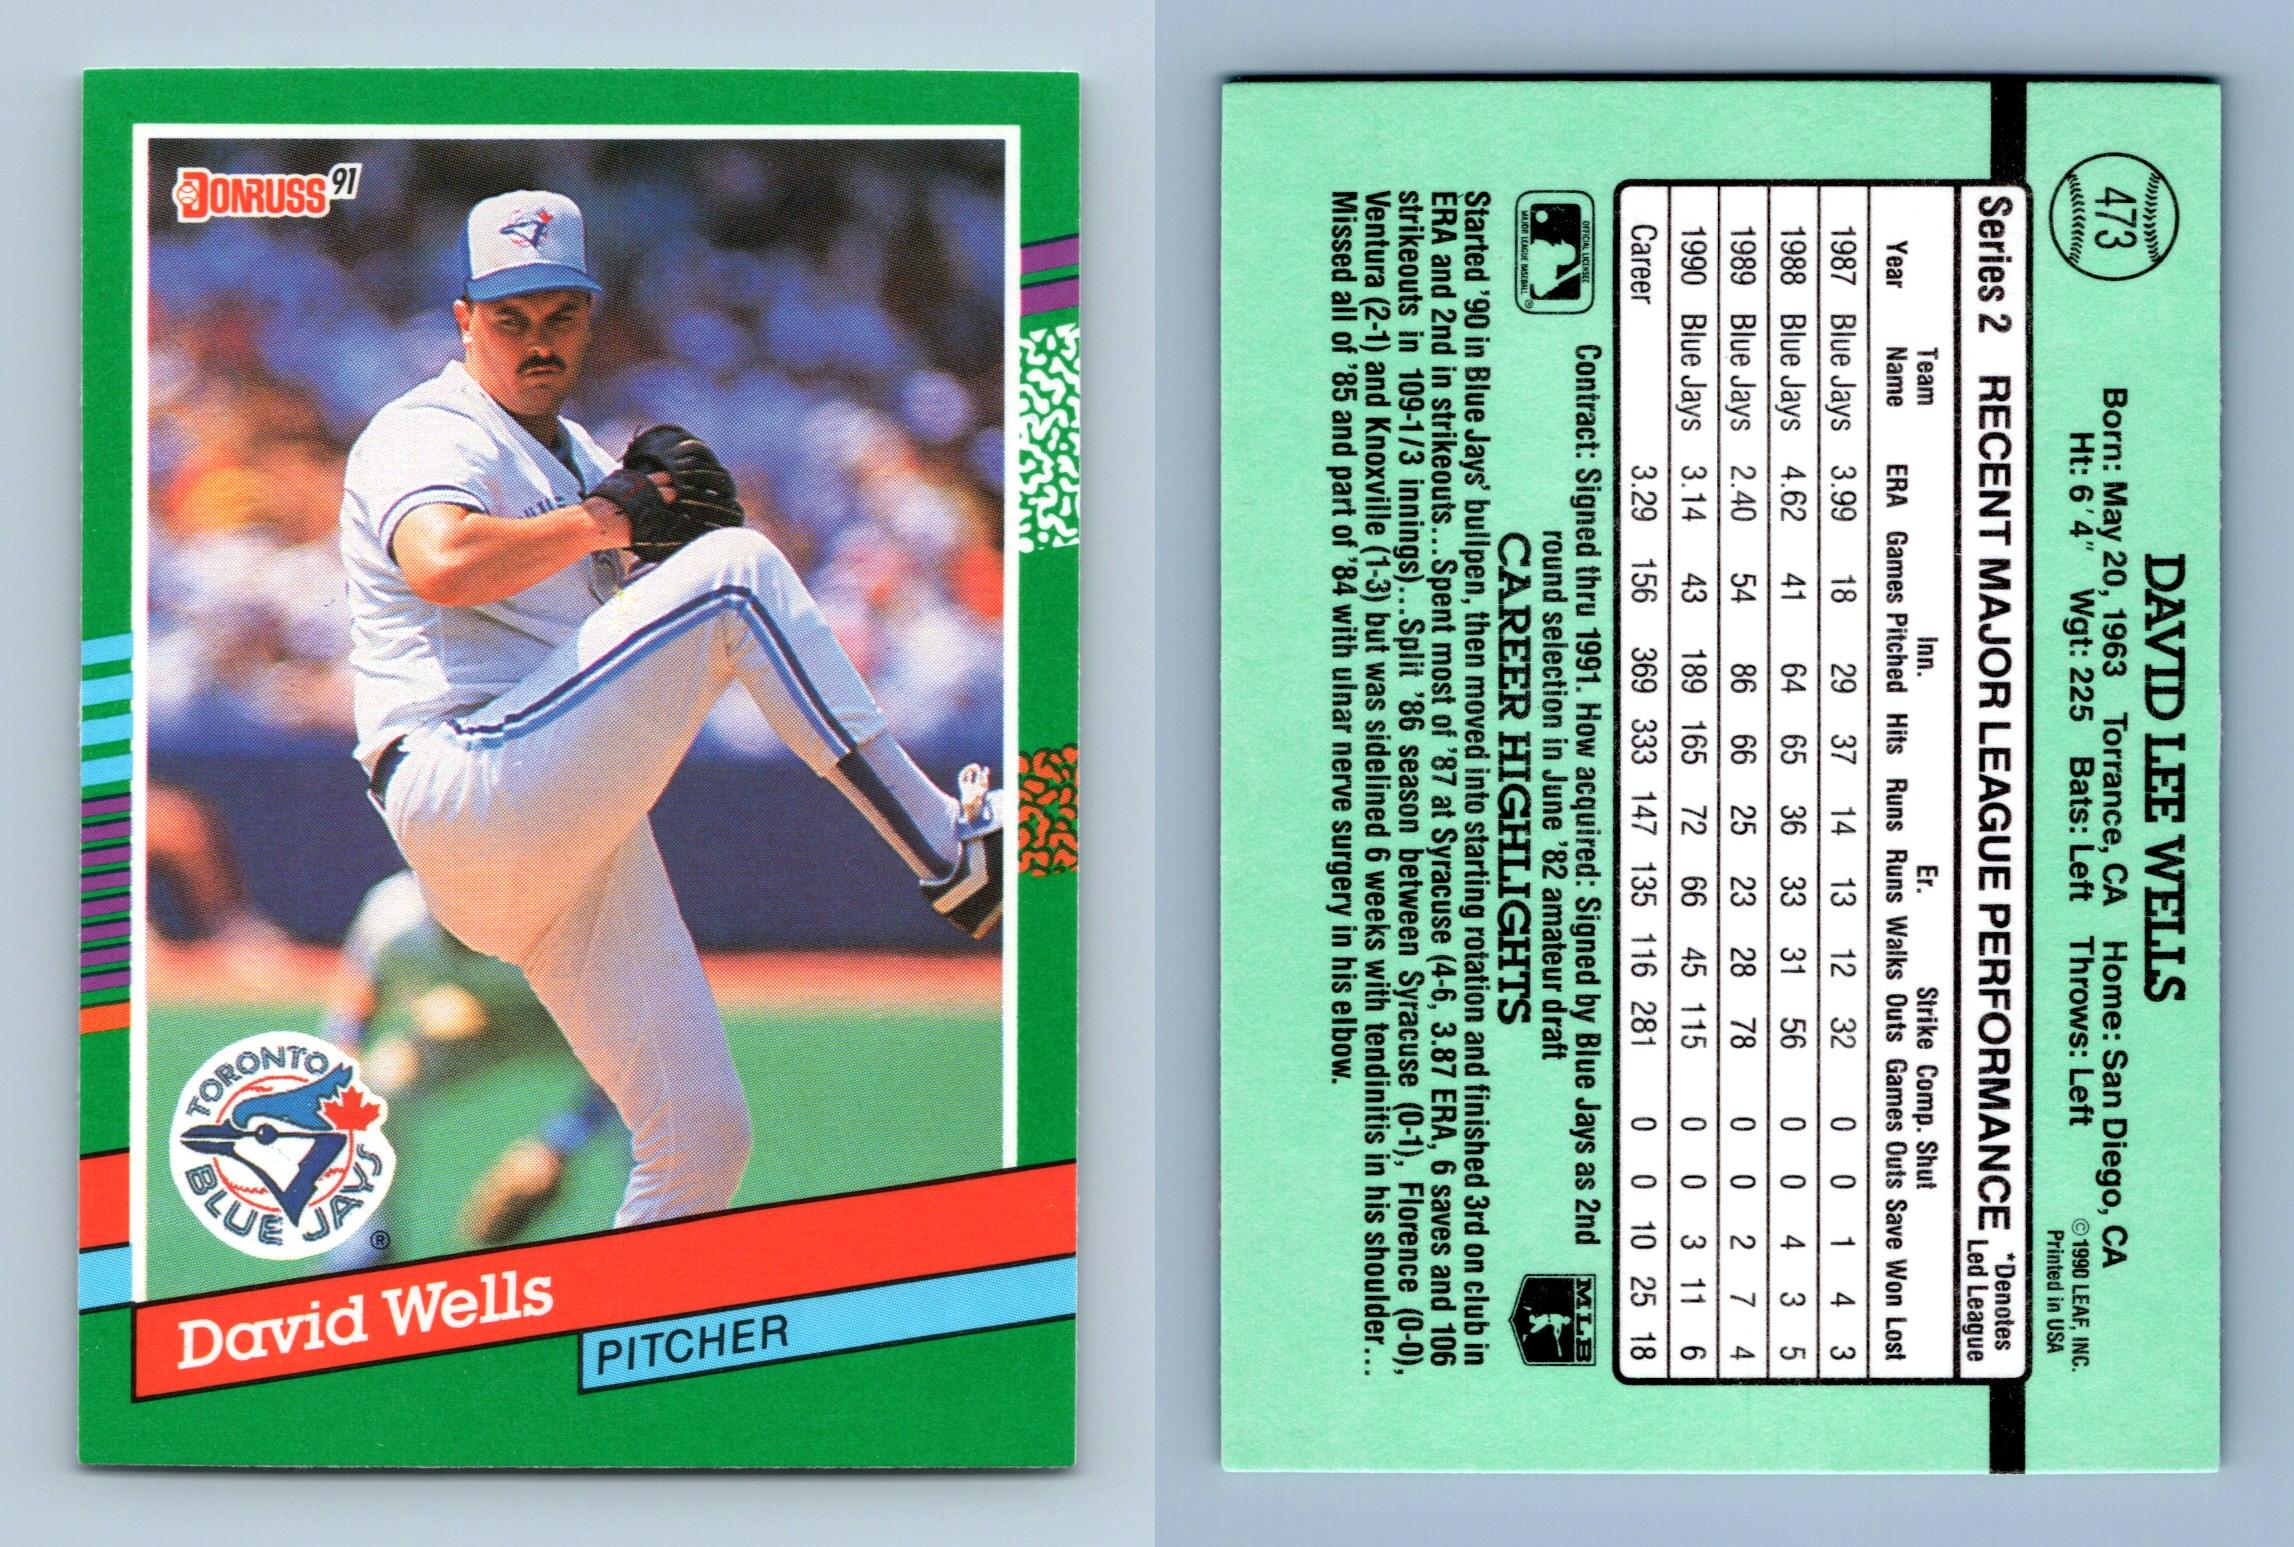 بروجكتر David Wells - Blue Jays #473 Donruss 1991 Baseball Trading Card بروجكتر